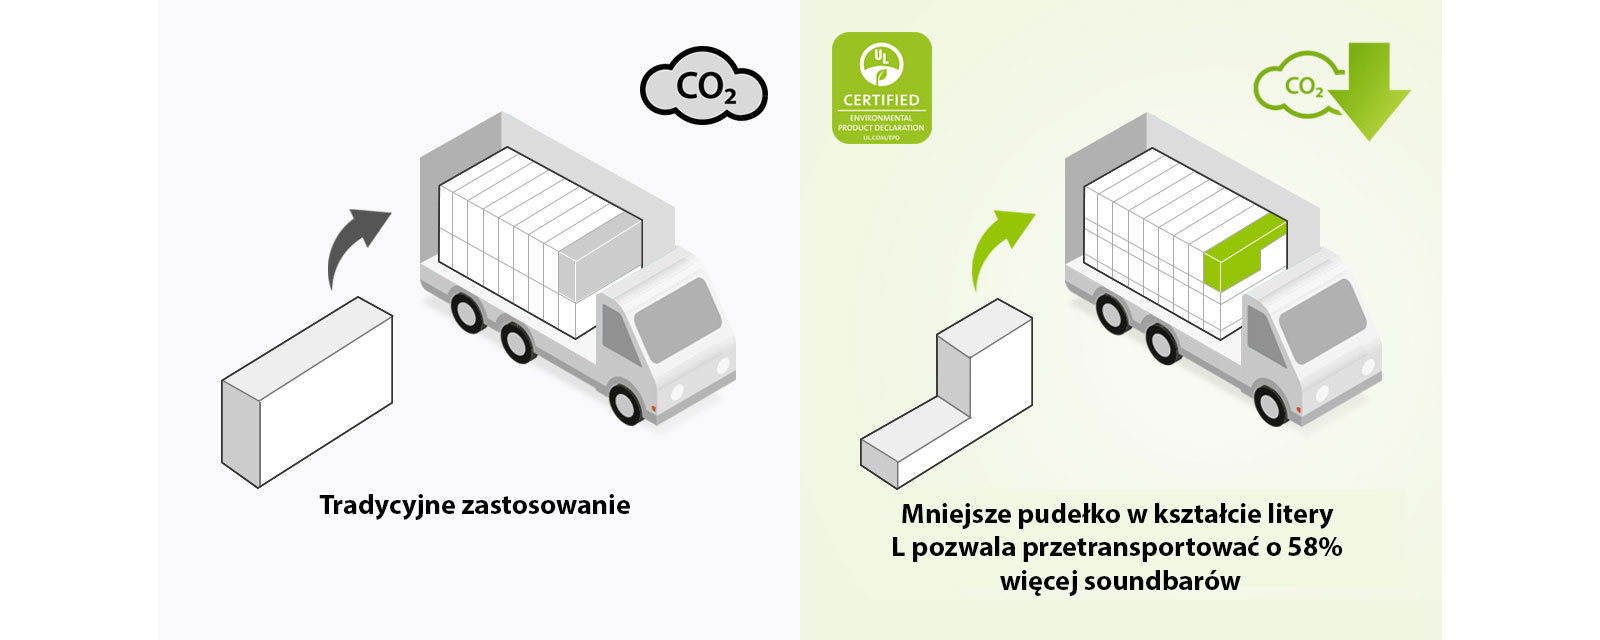 Po lewej stronie znajduje się piktogram przedstawiający zwykłe prostokątne pudełko i ciężarówkę załadowaną takimi pudełkami. Dodatkowo jest widoczna ikona CO2. Po prawej stronie znajdują się pudełko w kształcie litery L i ciężarówka załadowana takimi pudełkami. Dodatkowo jest widoczna ikona redukcji CO2.